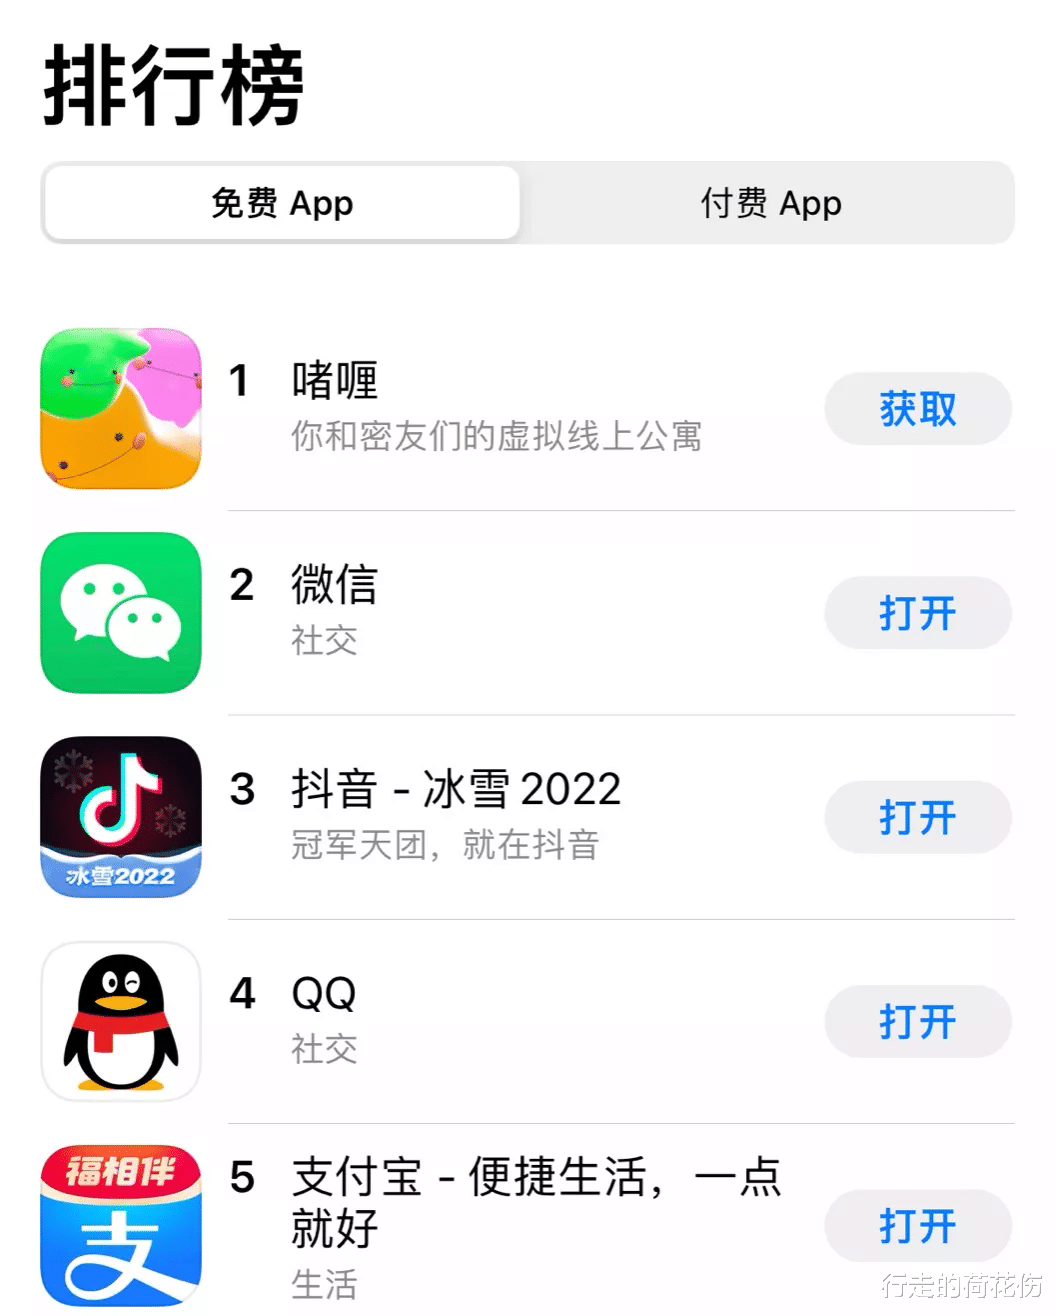 超越微信，这国产App啫喱凭什么登上榜单第一？